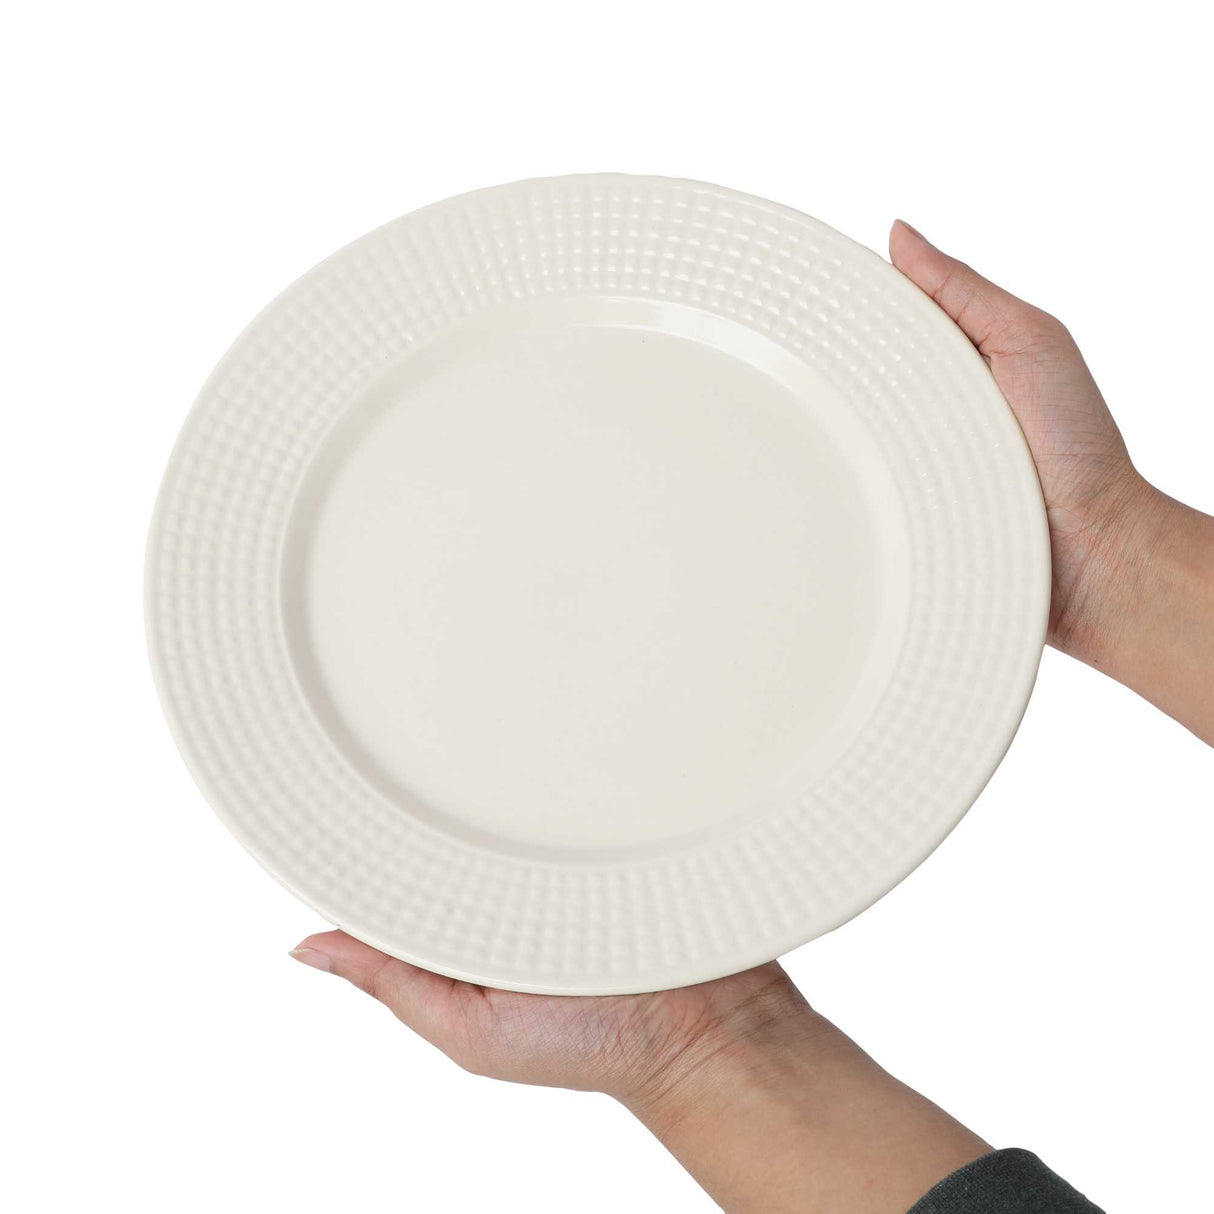 White ceramic dinner plate 